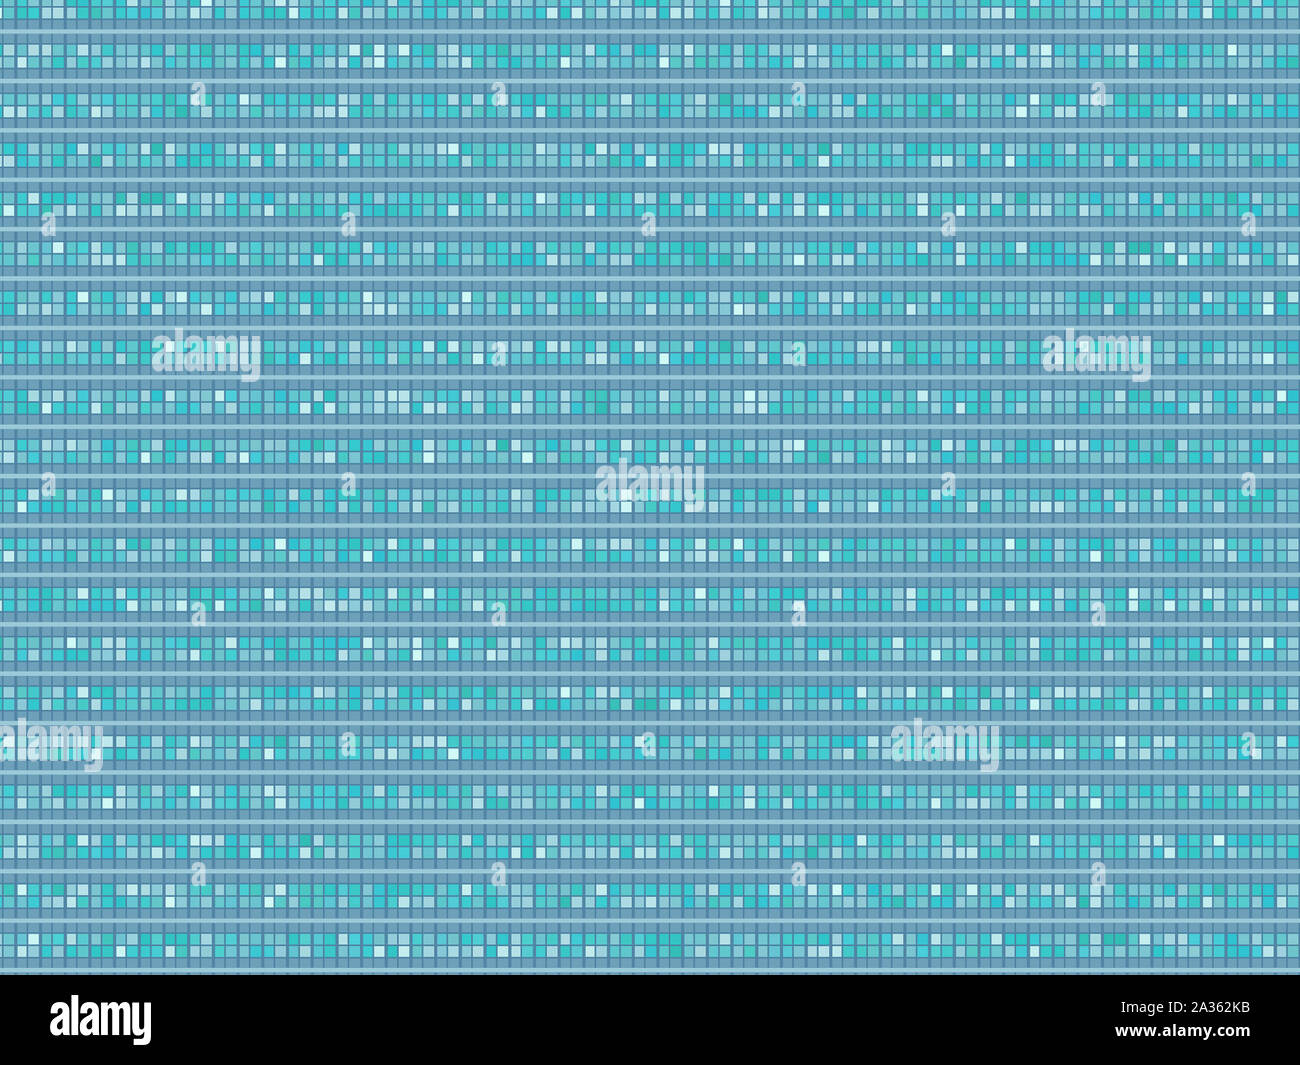 Zusammenfassung Hintergrund Werbung Blau, Grau, Weiß, dekorative Horizontale zeitgenössische Muster Stockfoto